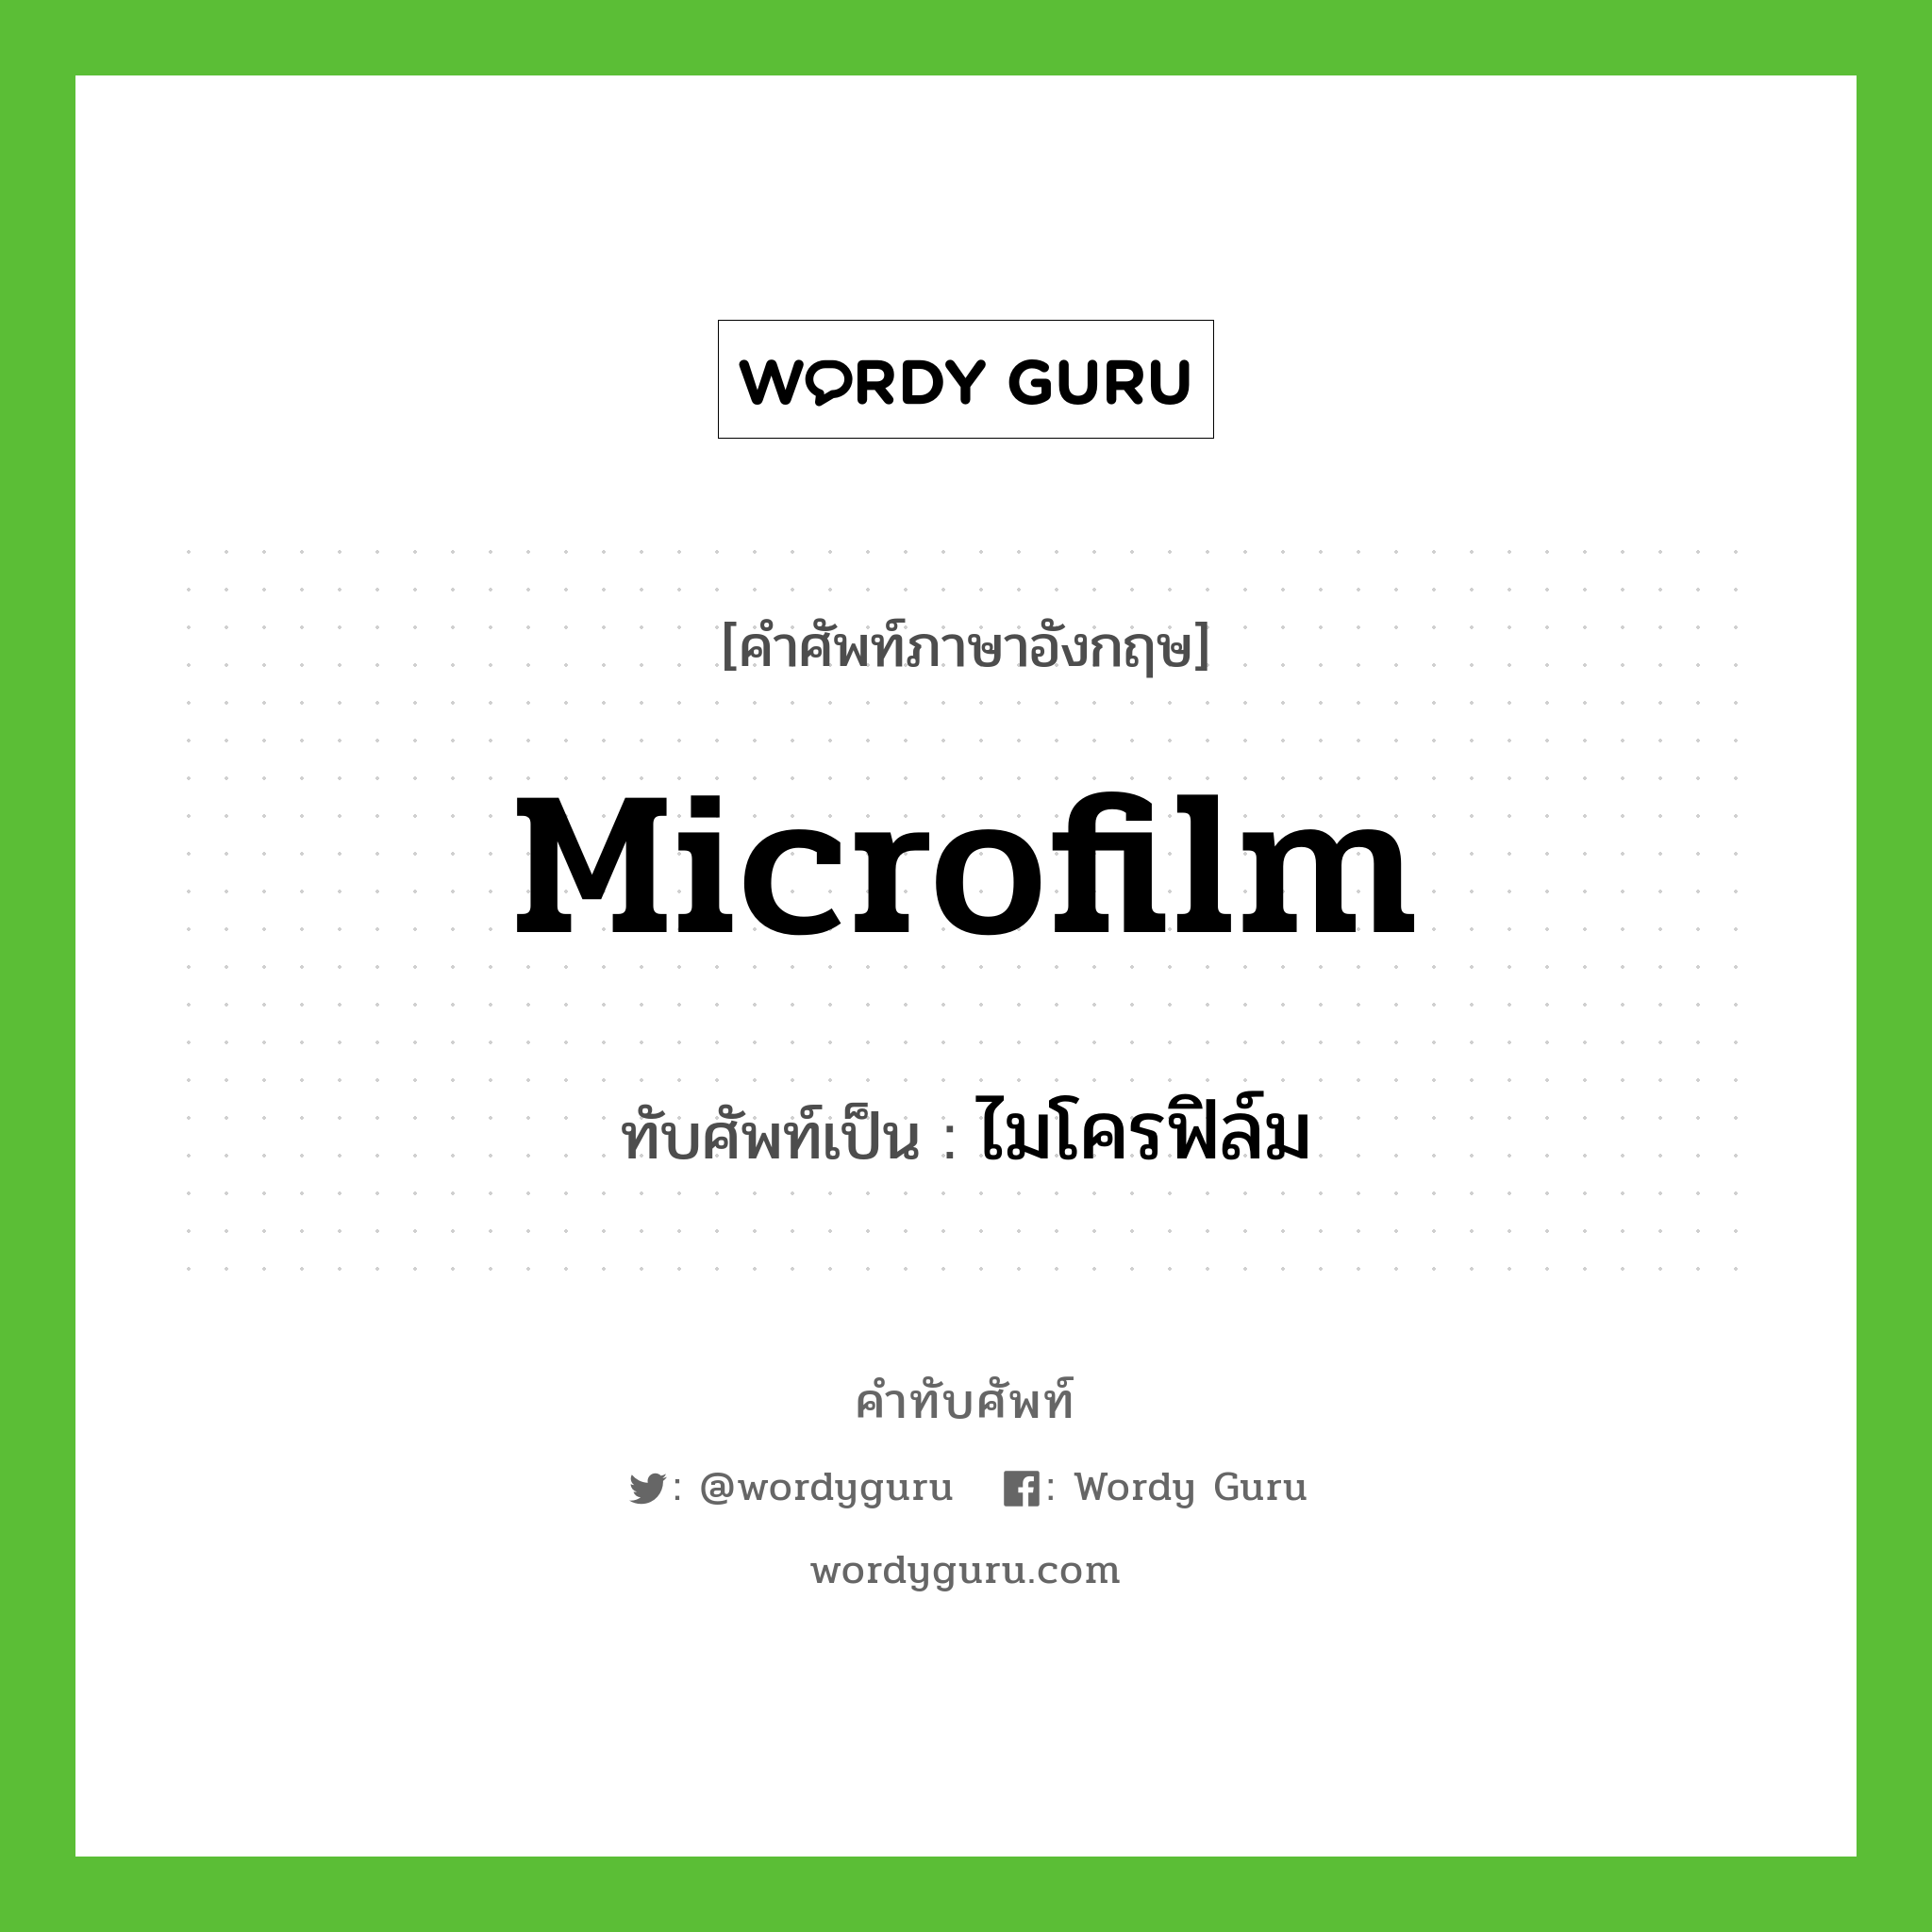 microfilm เขียนเป็นคำไทยว่าอะไร?, คำศัพท์ภาษาอังกฤษ microfilm ทับศัพท์เป็น ไมโครฟิล์ม